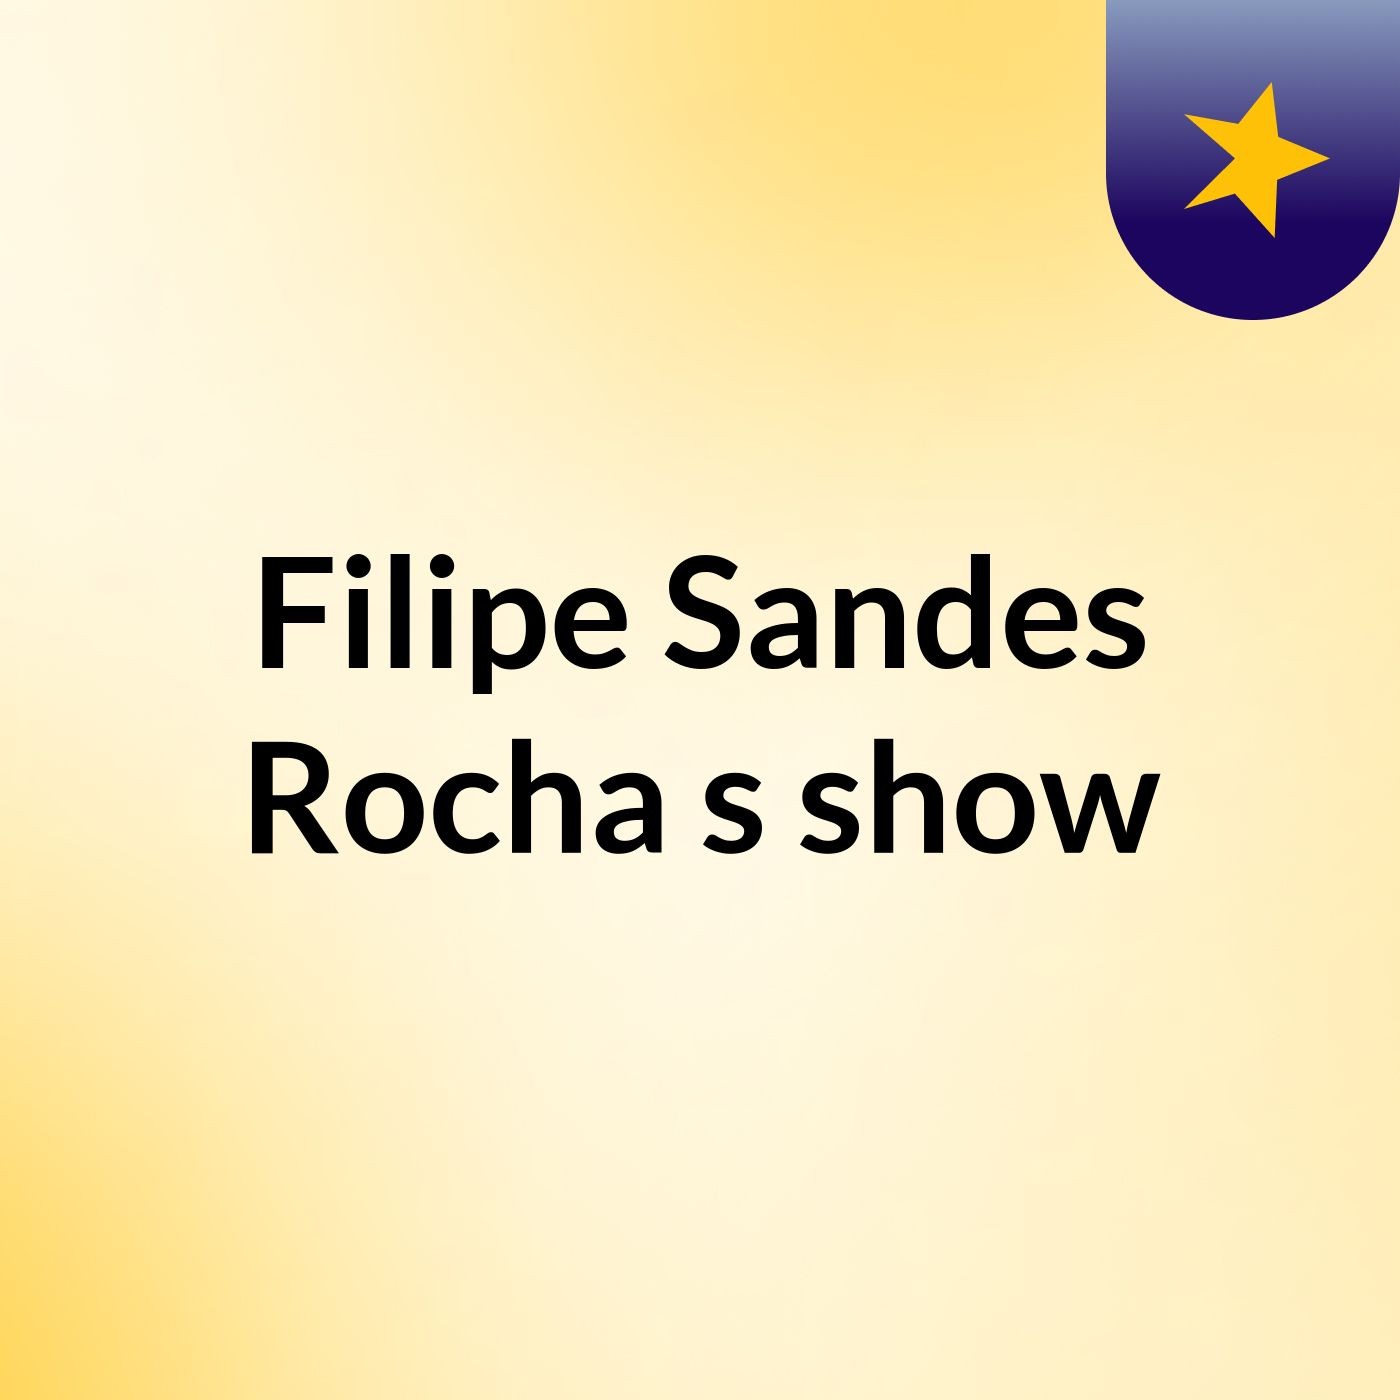 Filipe Sandes Rocha's show